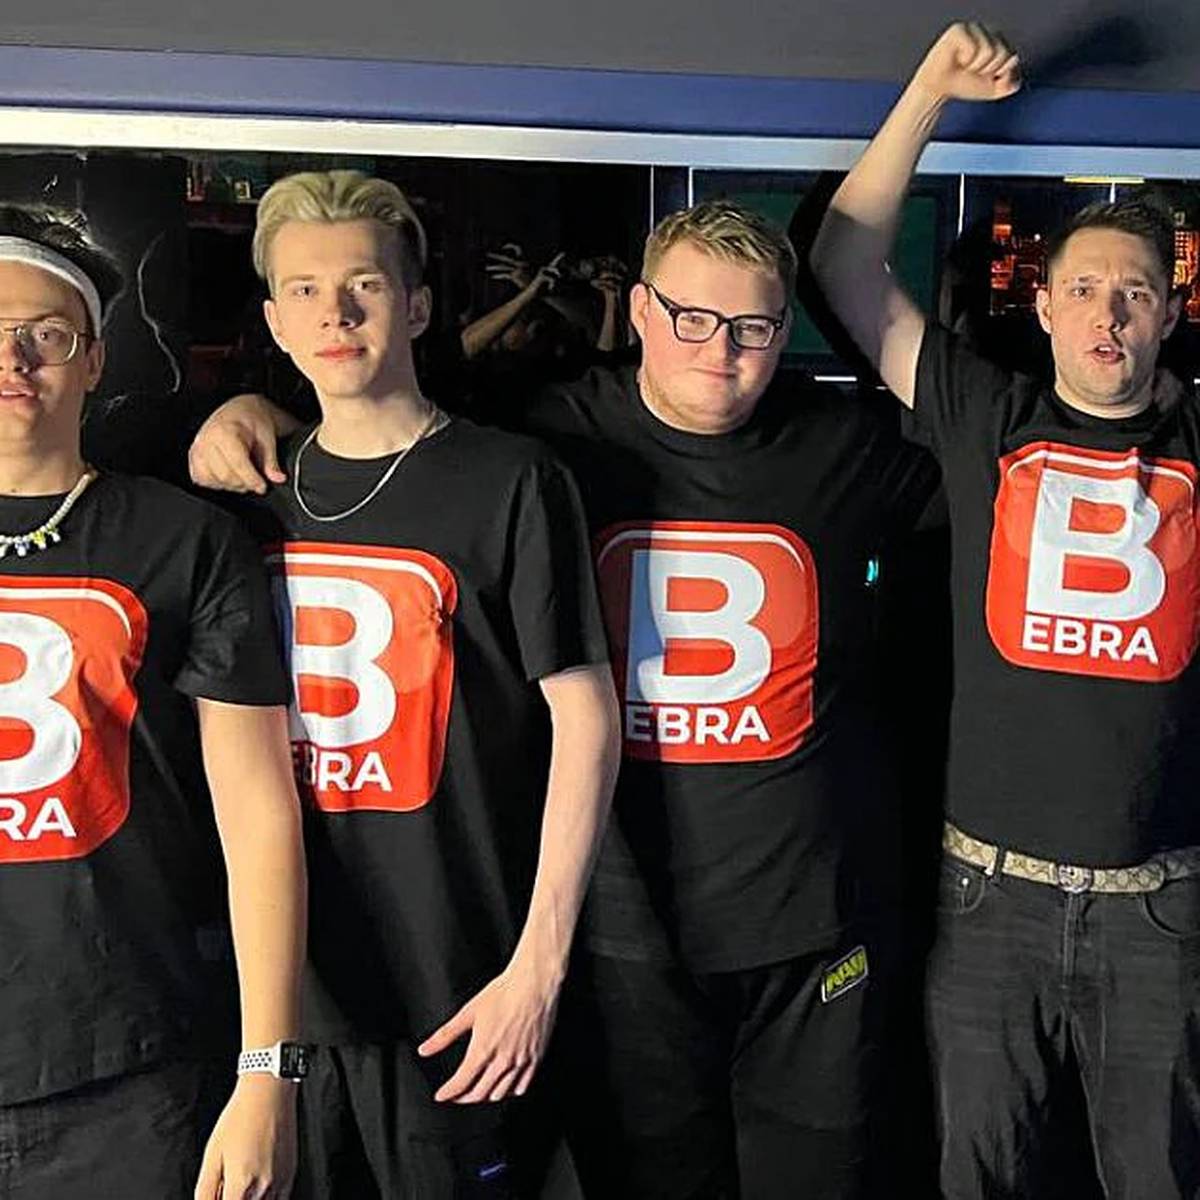 Der frühere NAVI-Star Boombl4 ist mit neuem Team zurück im kompetitiven Counter-Strike. Mit Team BEBRA trat er in einem Moskauer LAN-Event an.